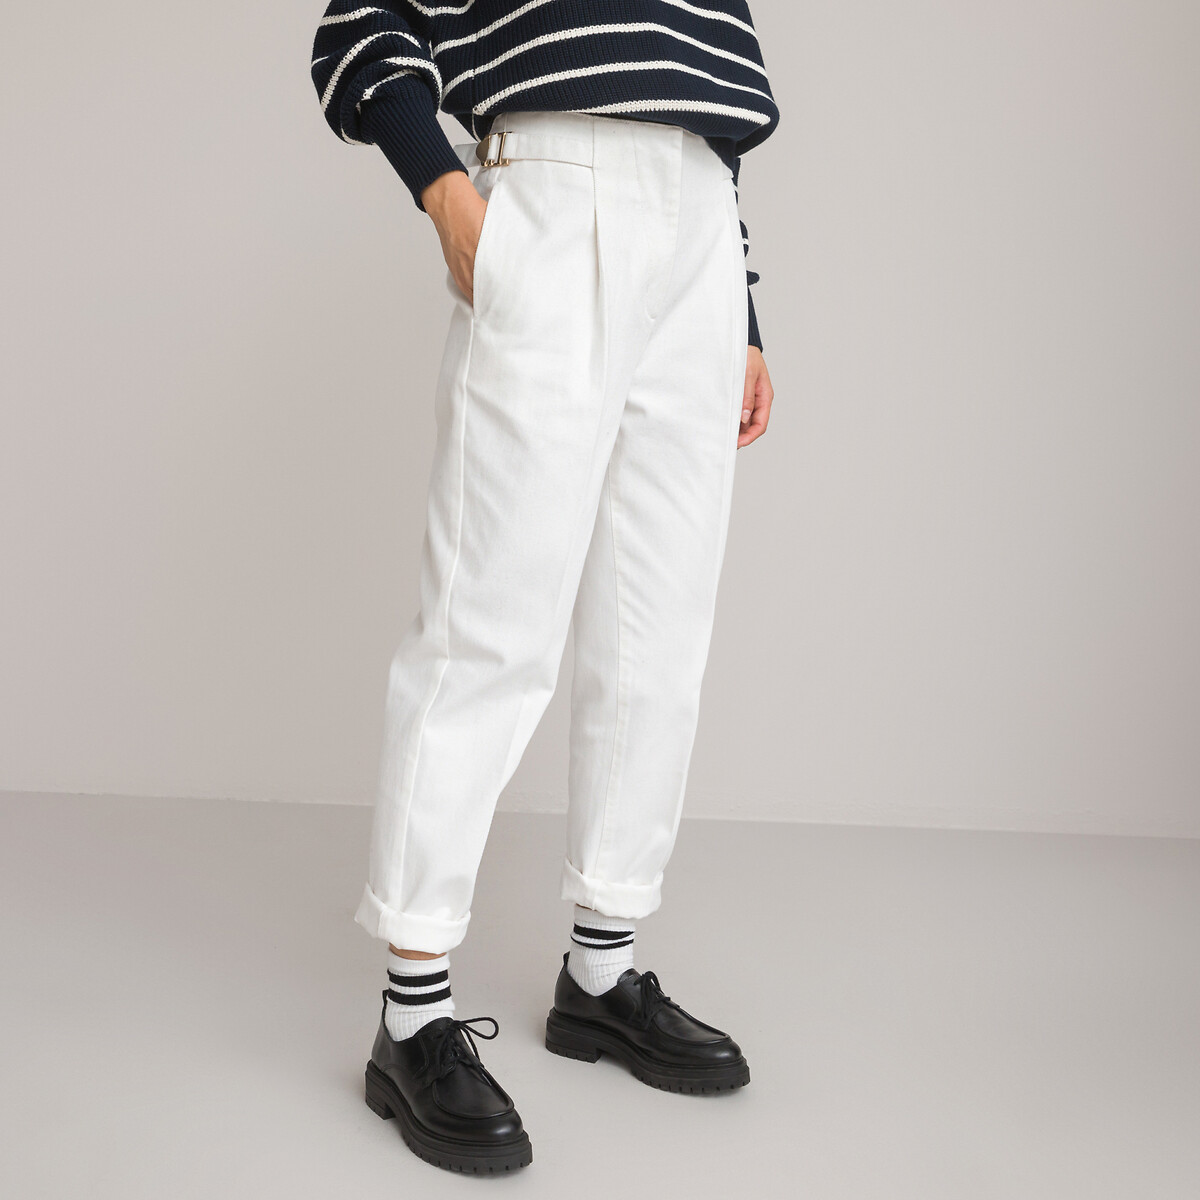 Cotton cigarette trousers, length 30